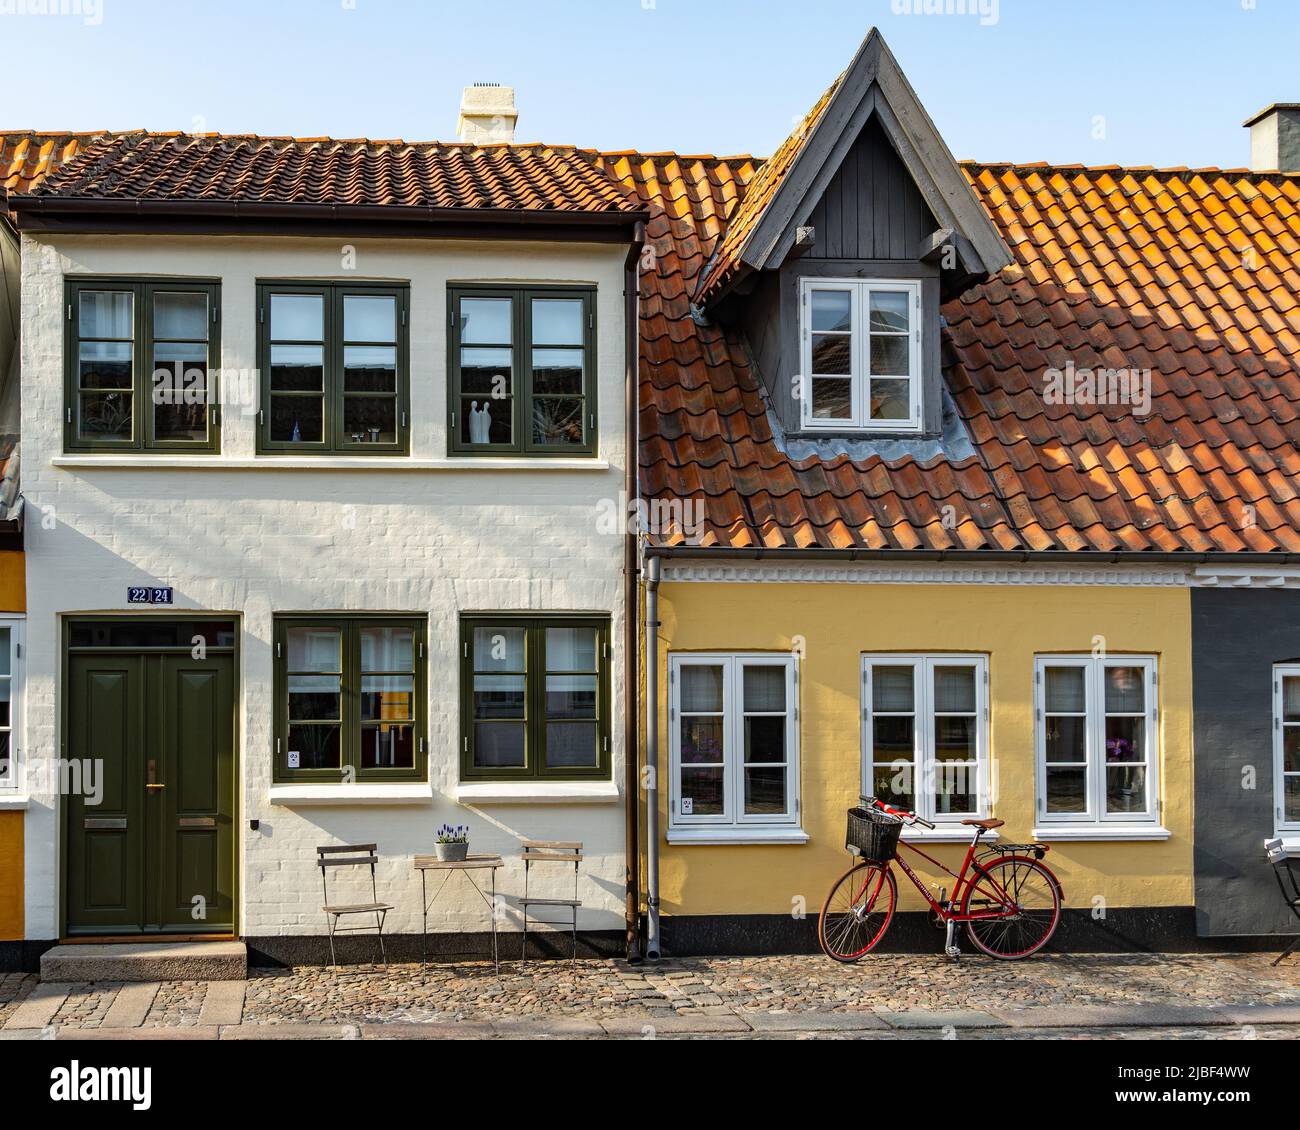 Arquitectura típica de vivienda danesa. Los buhardillas le permiten aprovechar el espacio bajo el techo con ventanas que atrapan el light.Odense, Dinamarca Foto de stock